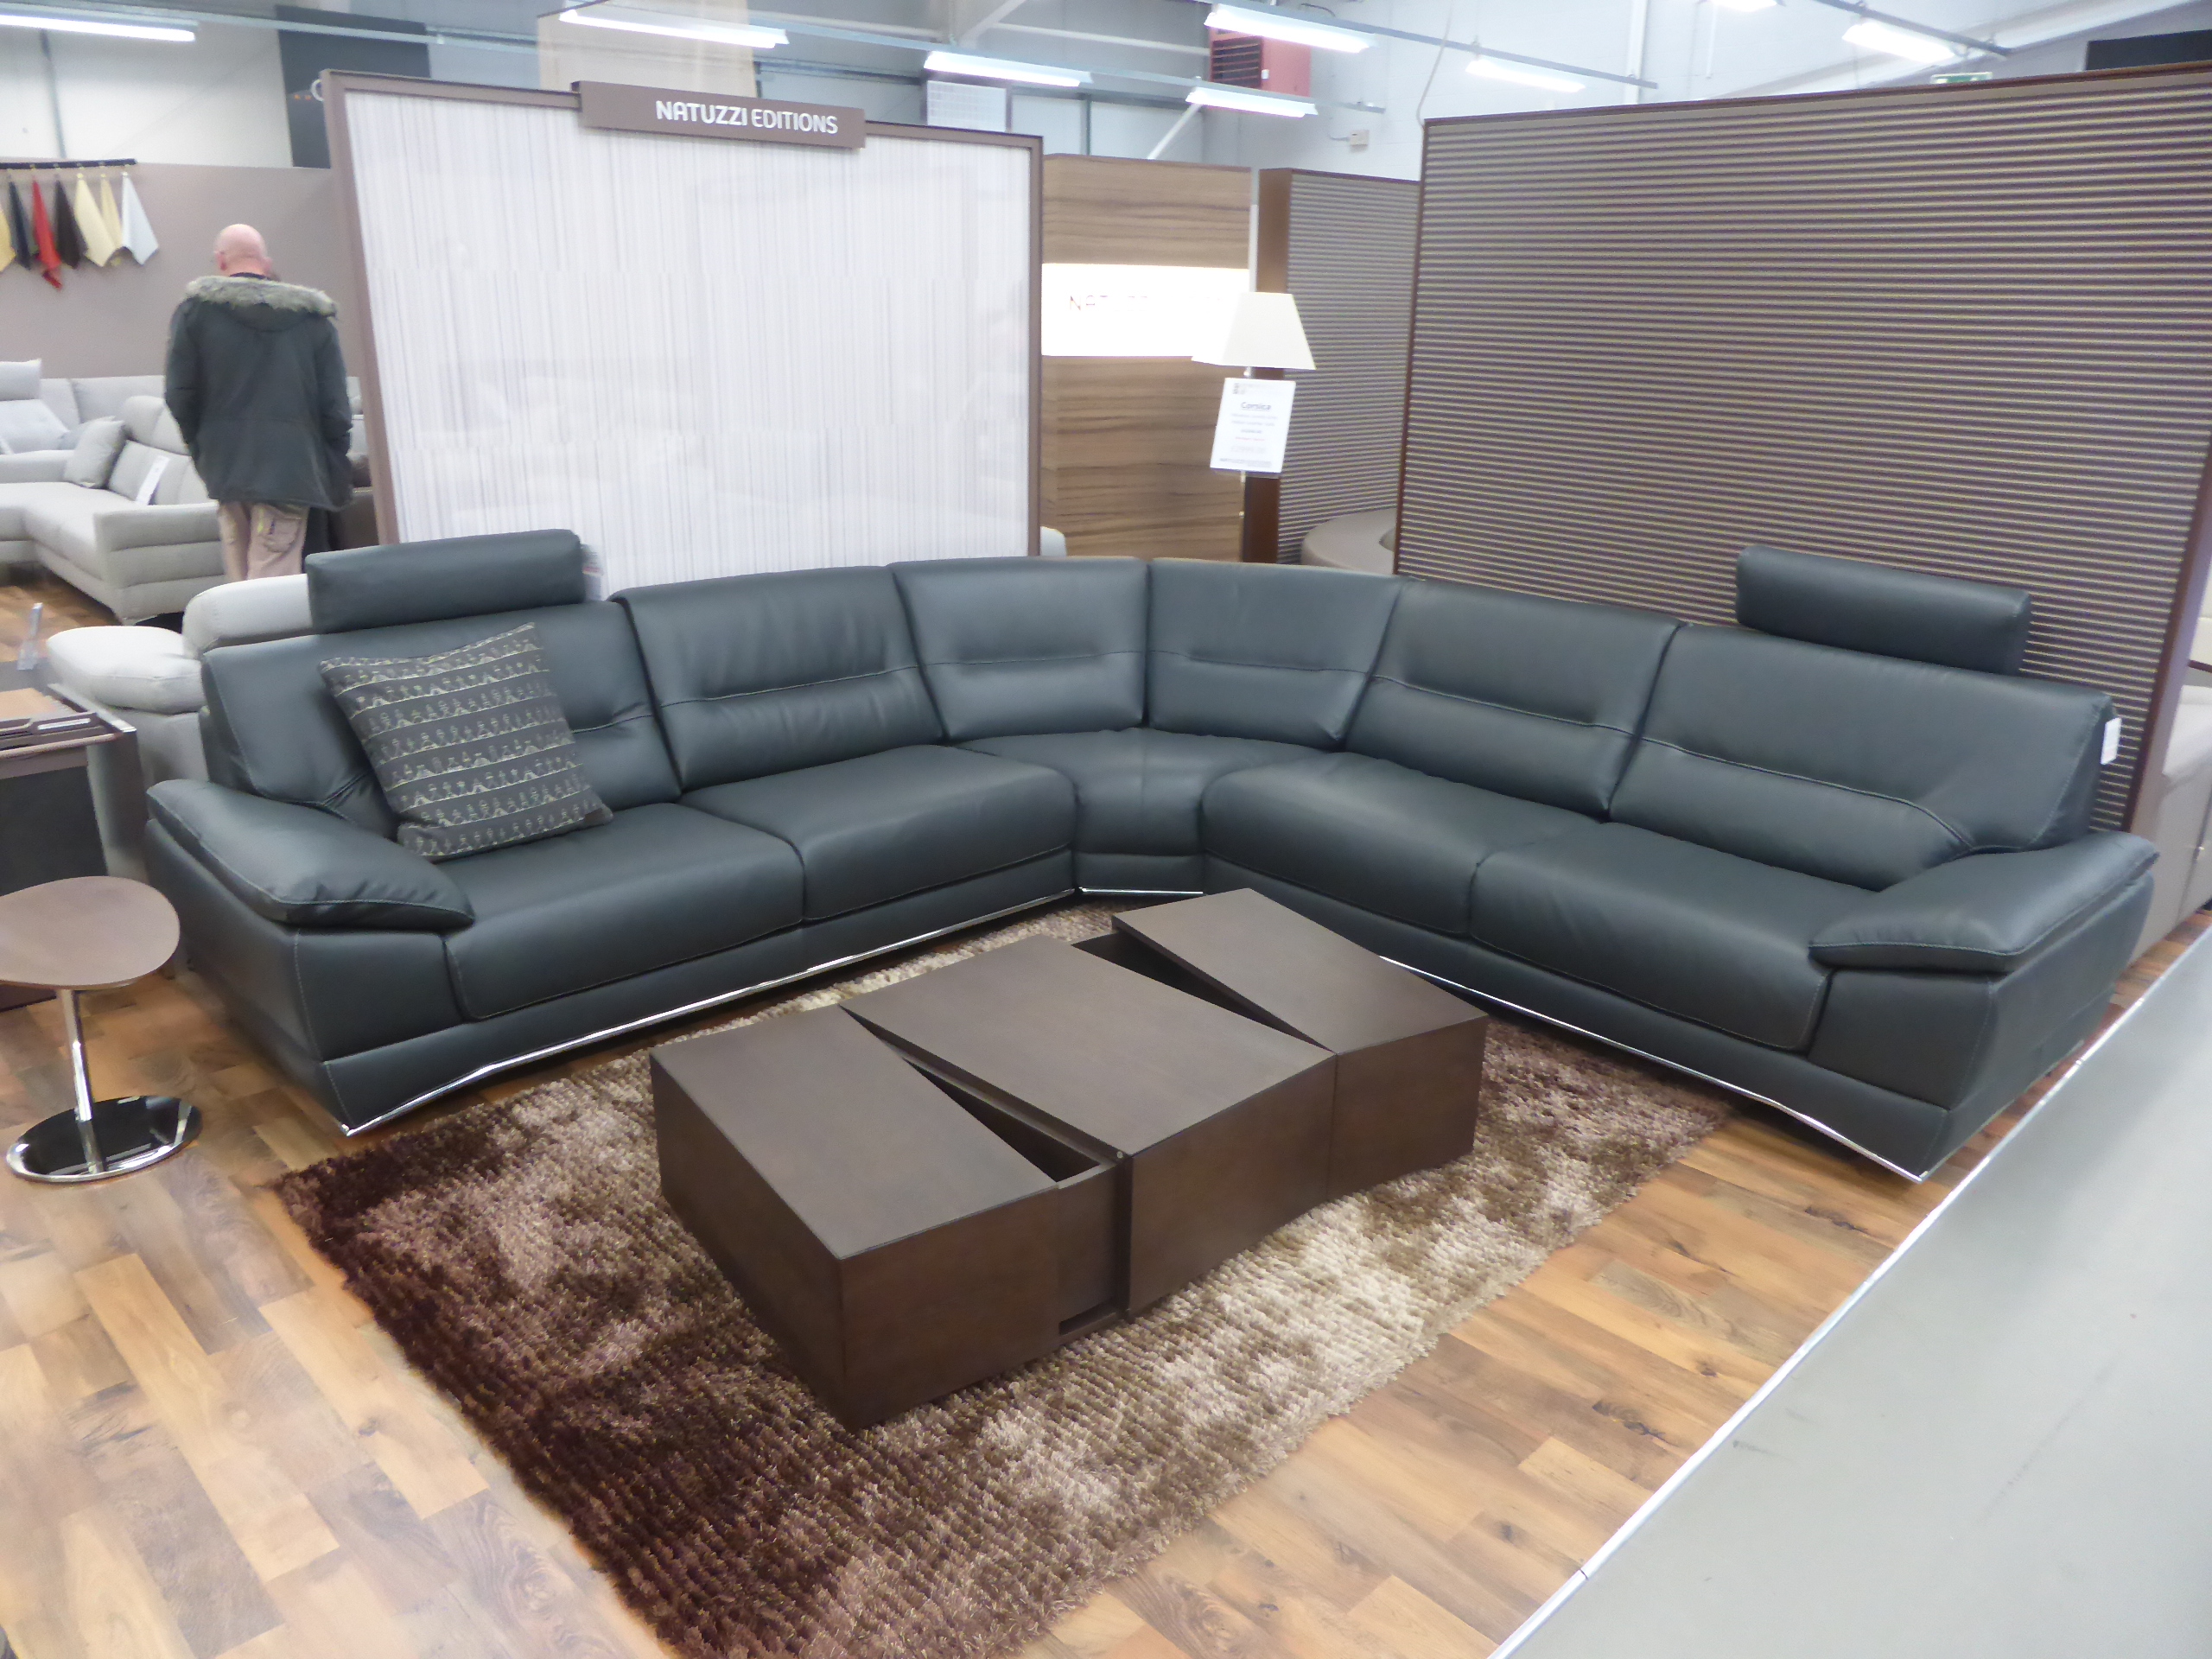 natuzzi sanremo leather corner recliner sofa